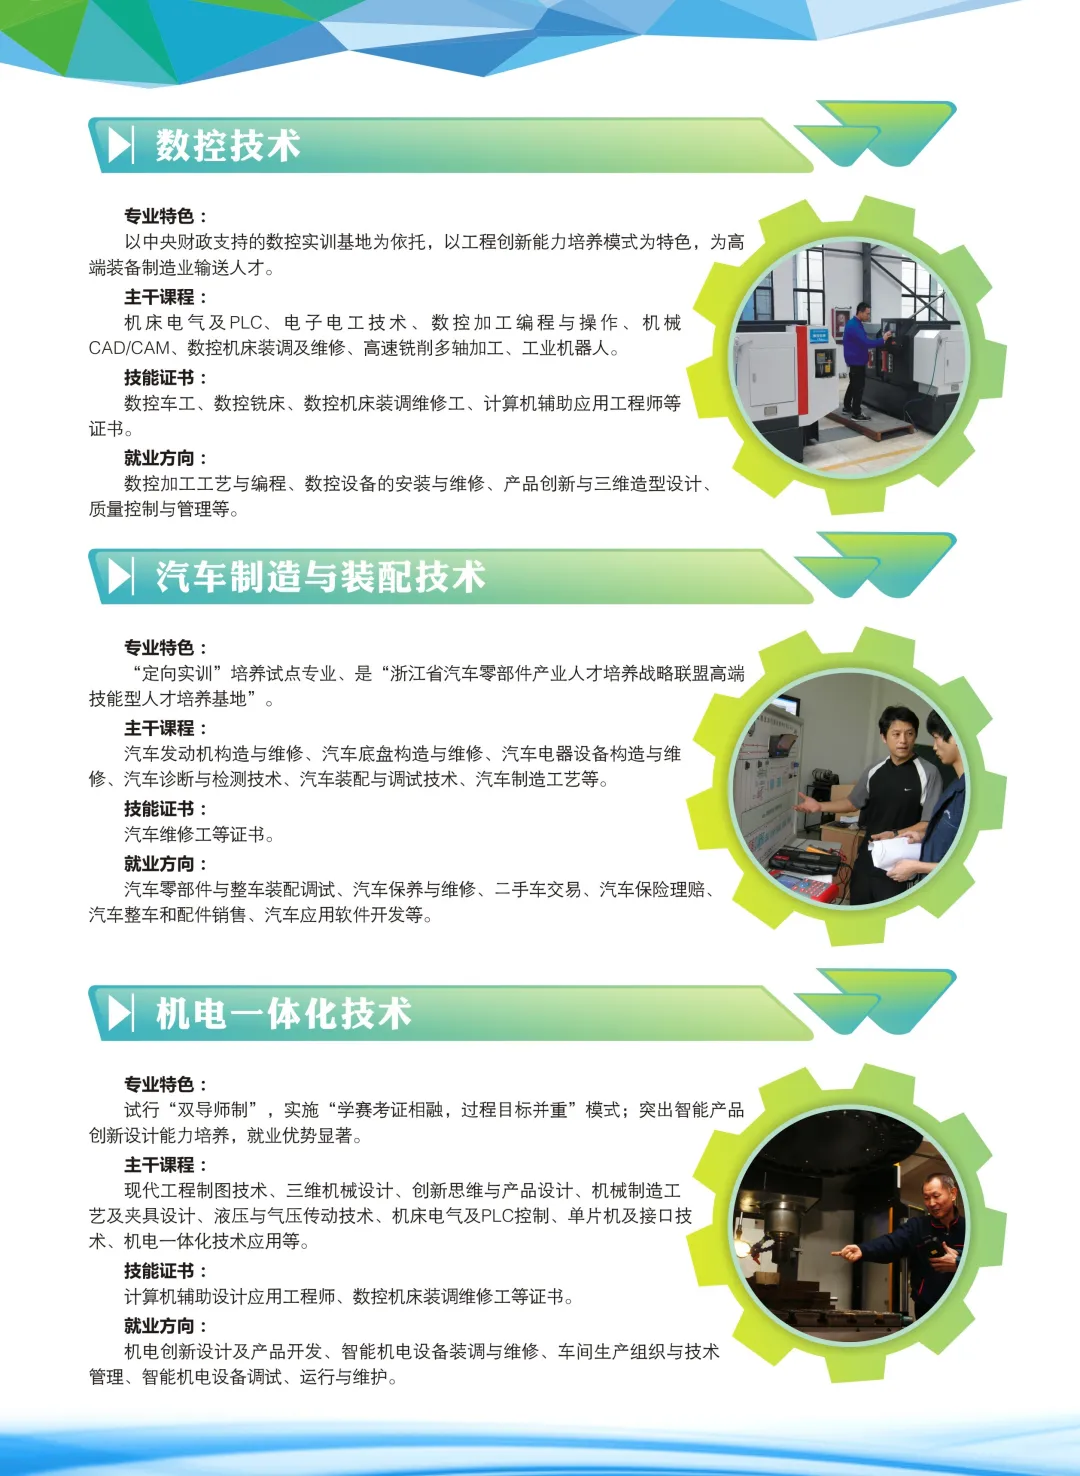  浙江同济科技职业学院2020年招生简章